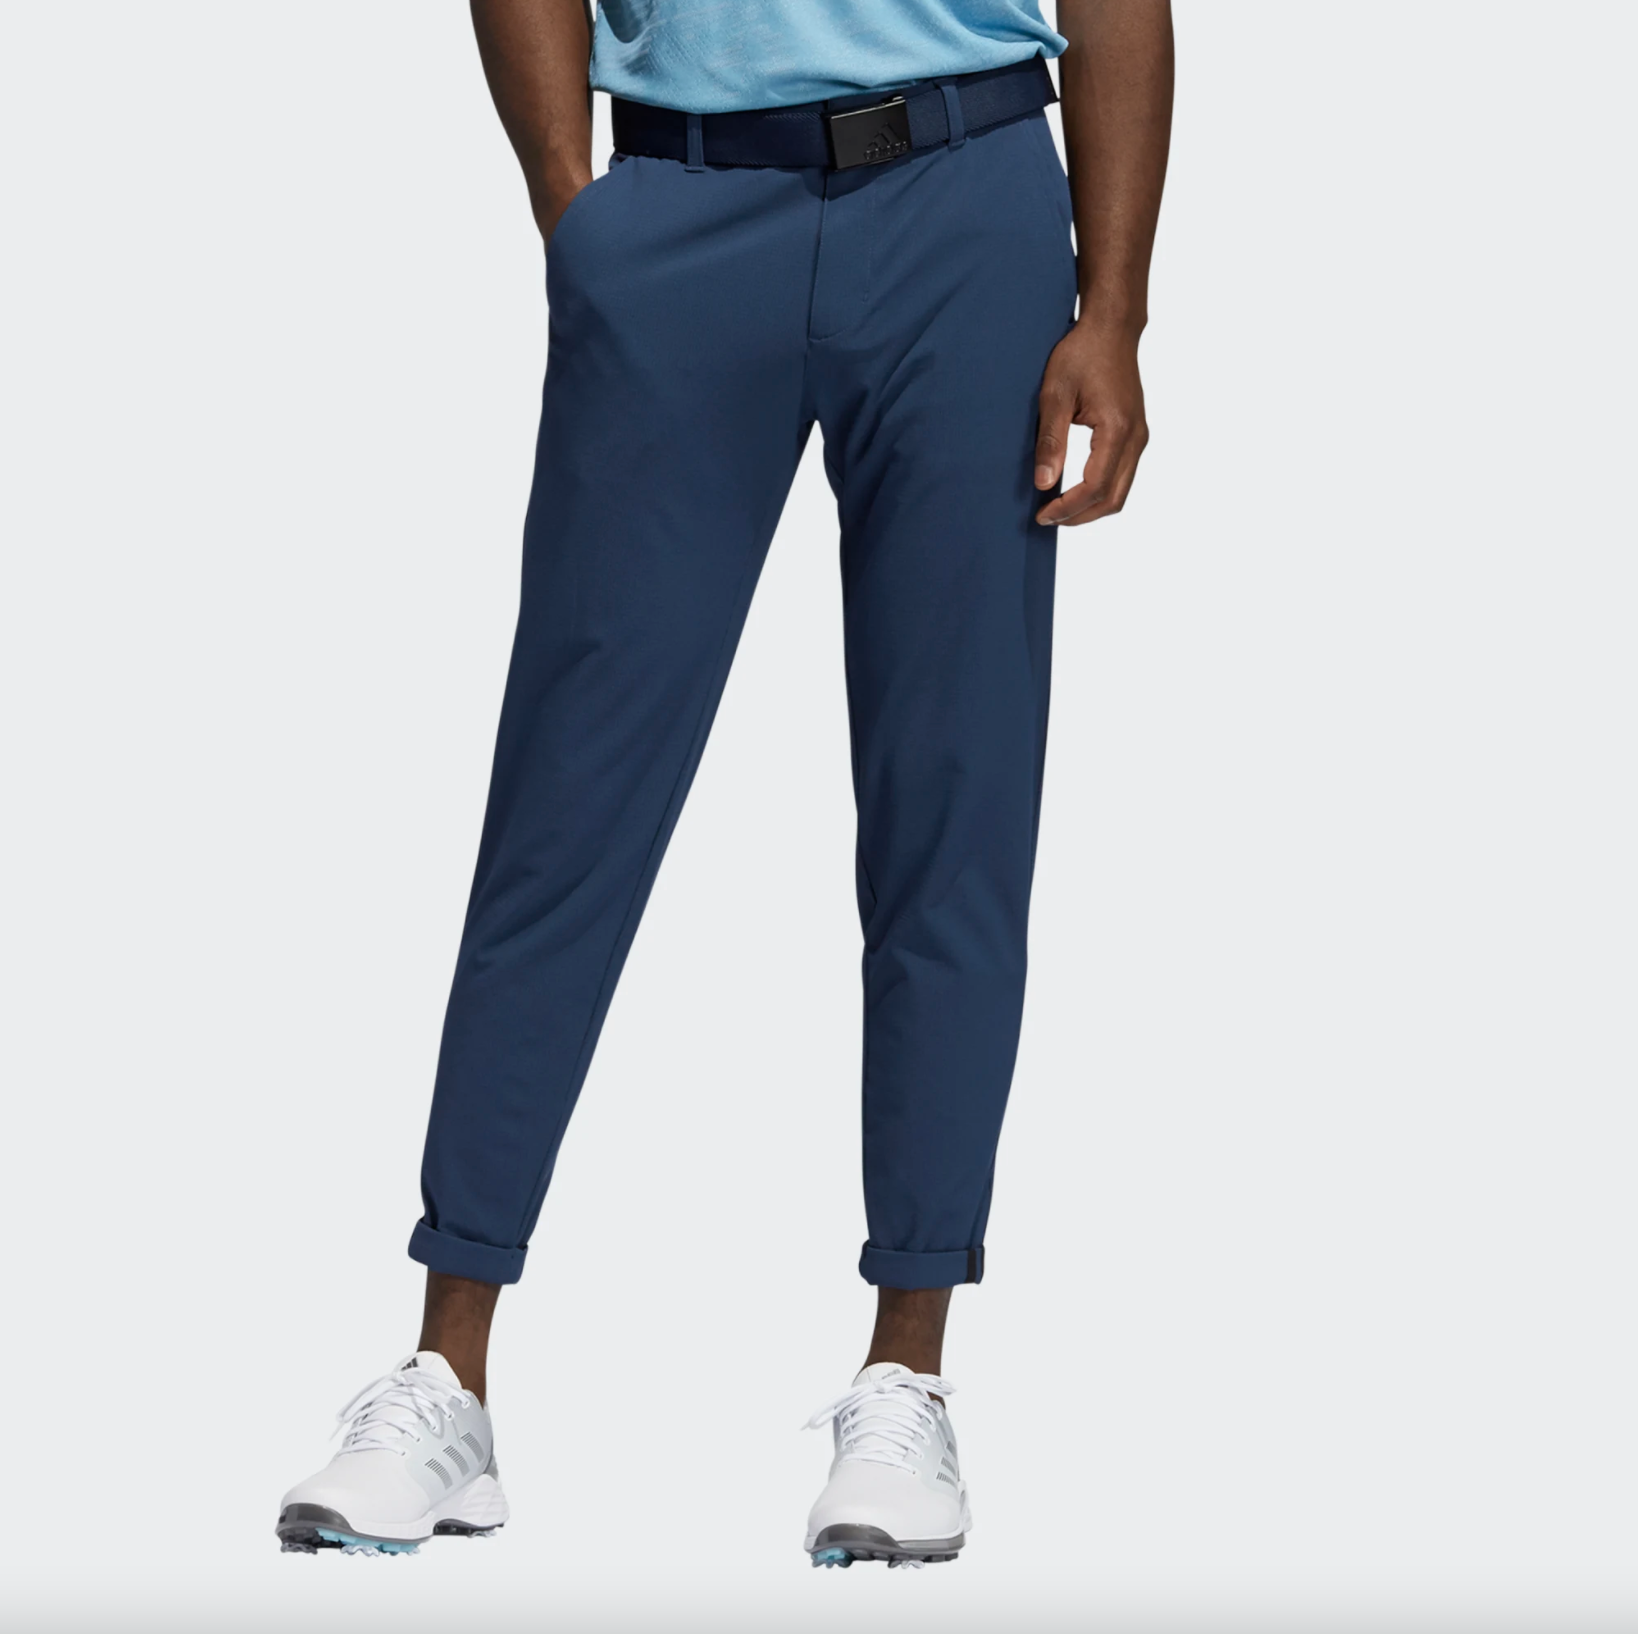 krom Verstikkend etiket Adidas Heren Pin Roll Golfbroek Blauw - John's Sport Shop